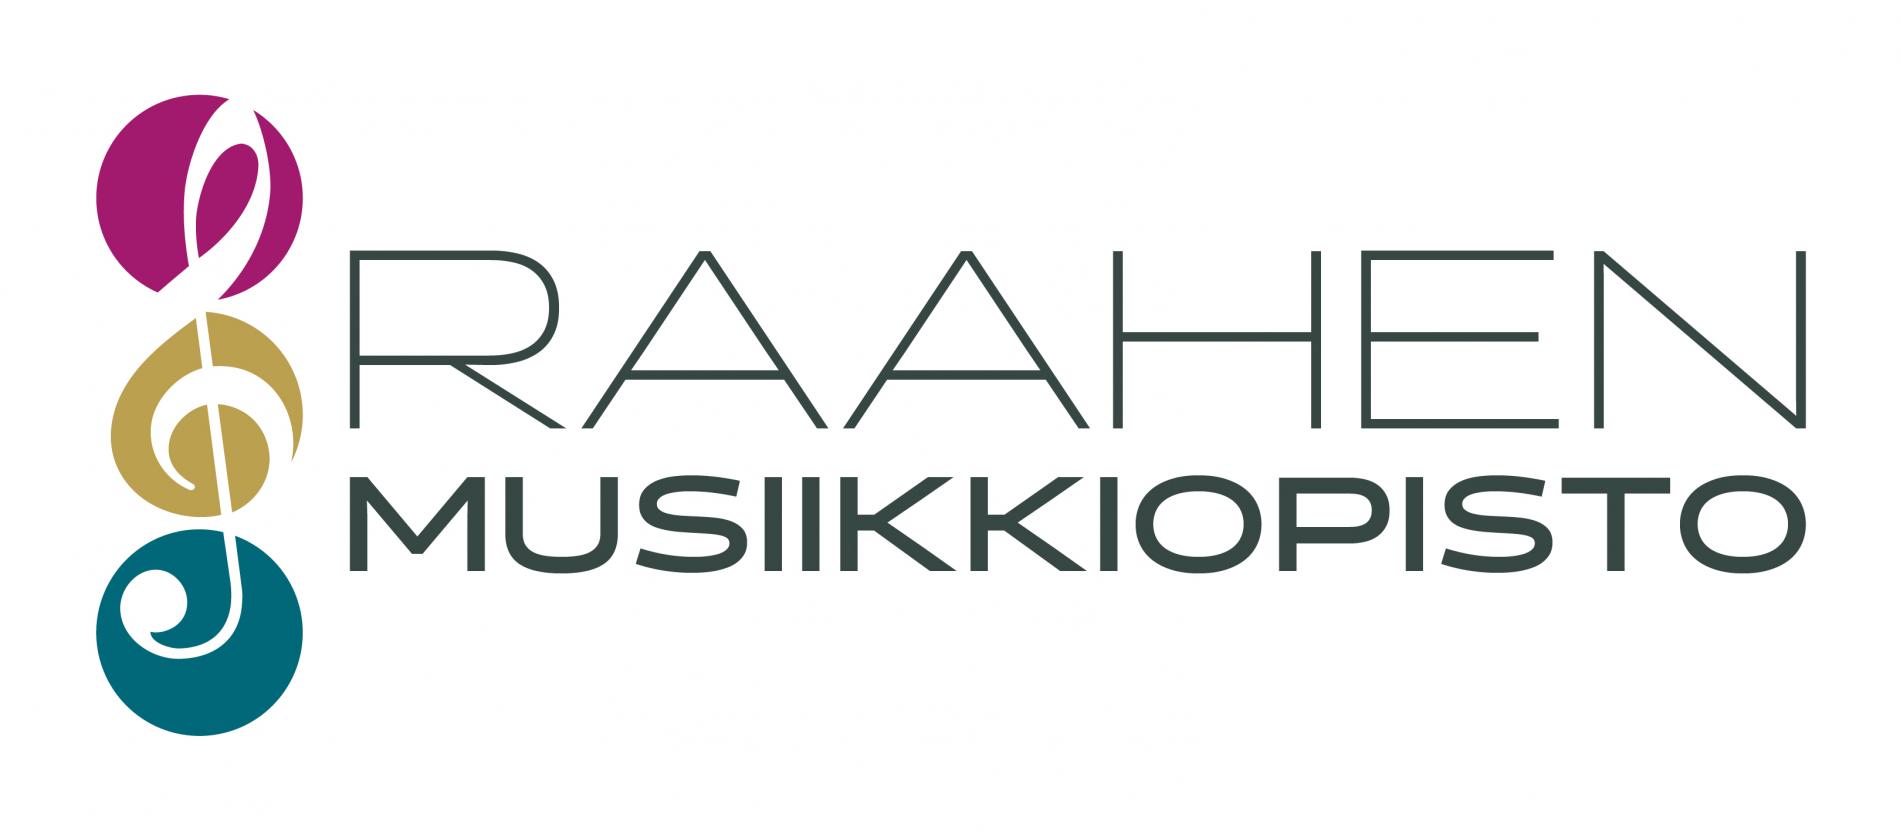 Raahen musiikkiopiston logo